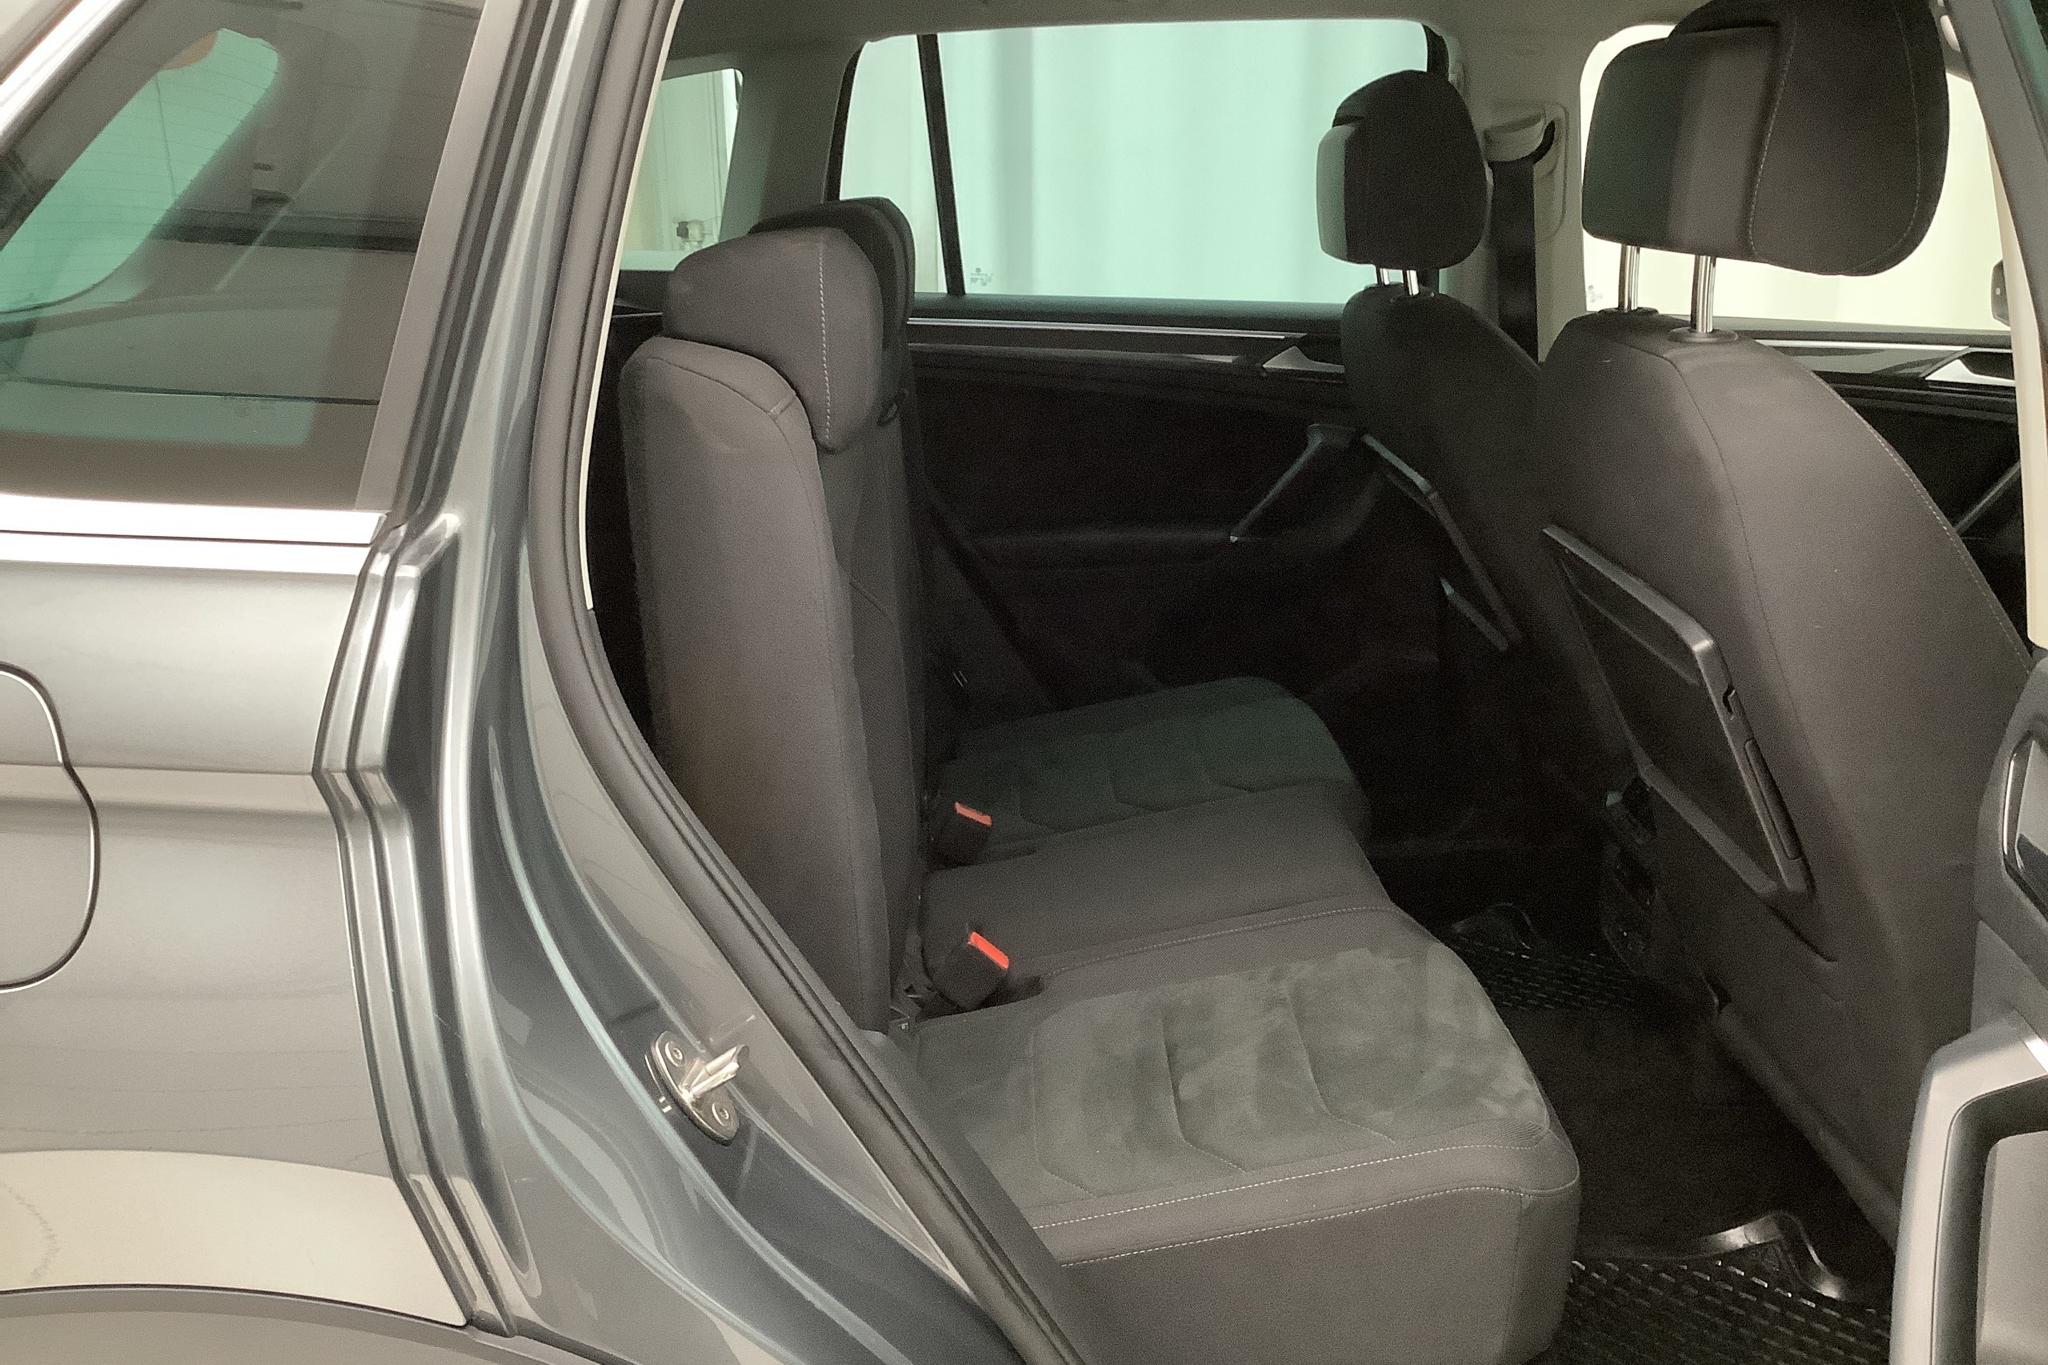 VW Tiguan 2.0 TDI 4MOTION (190hk) - 9 303 mil - Automat - silver - 2018